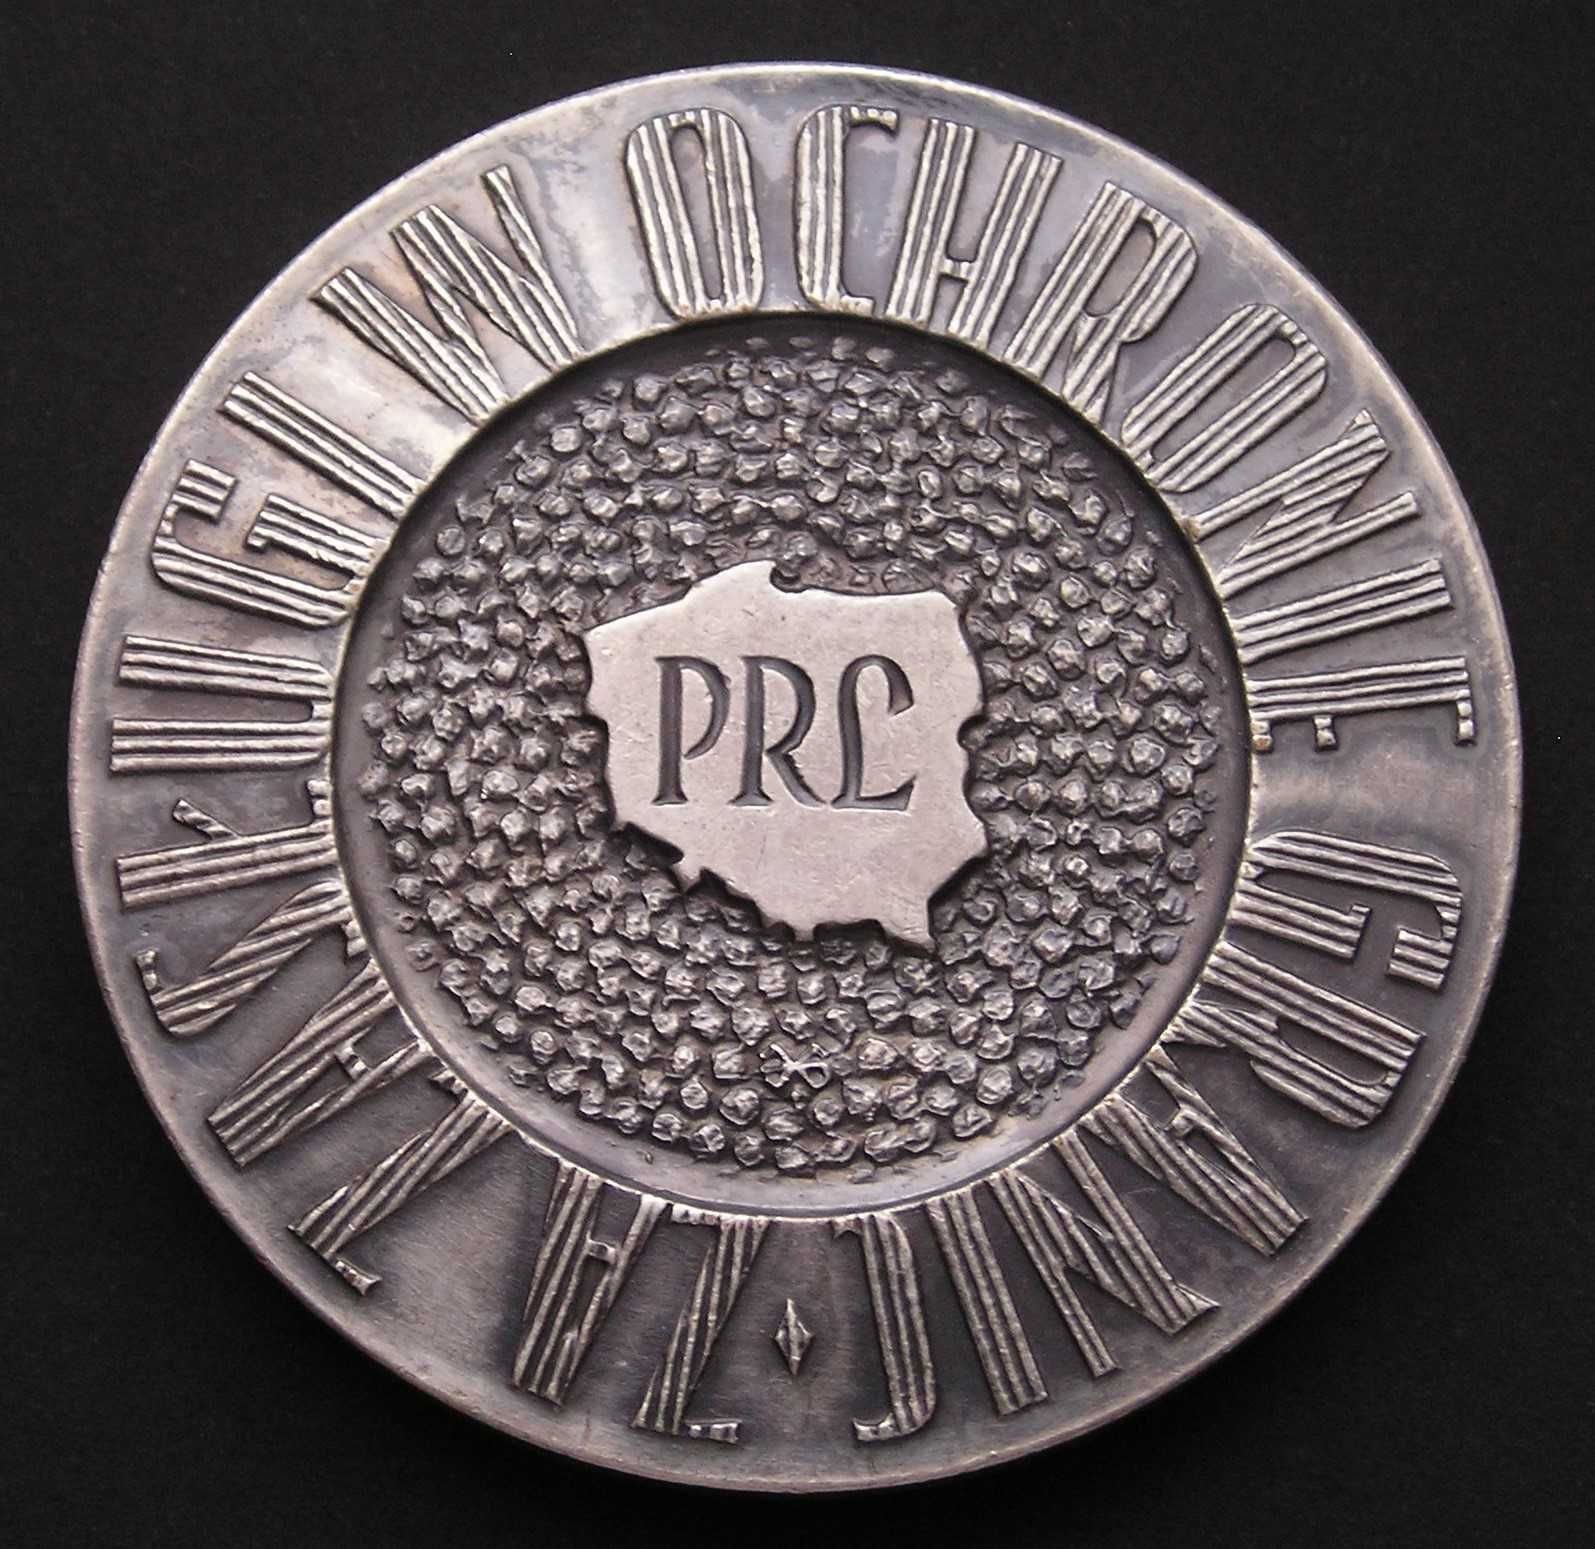 Polska medal WOP 1970 - Za zasługi w ochronie granic